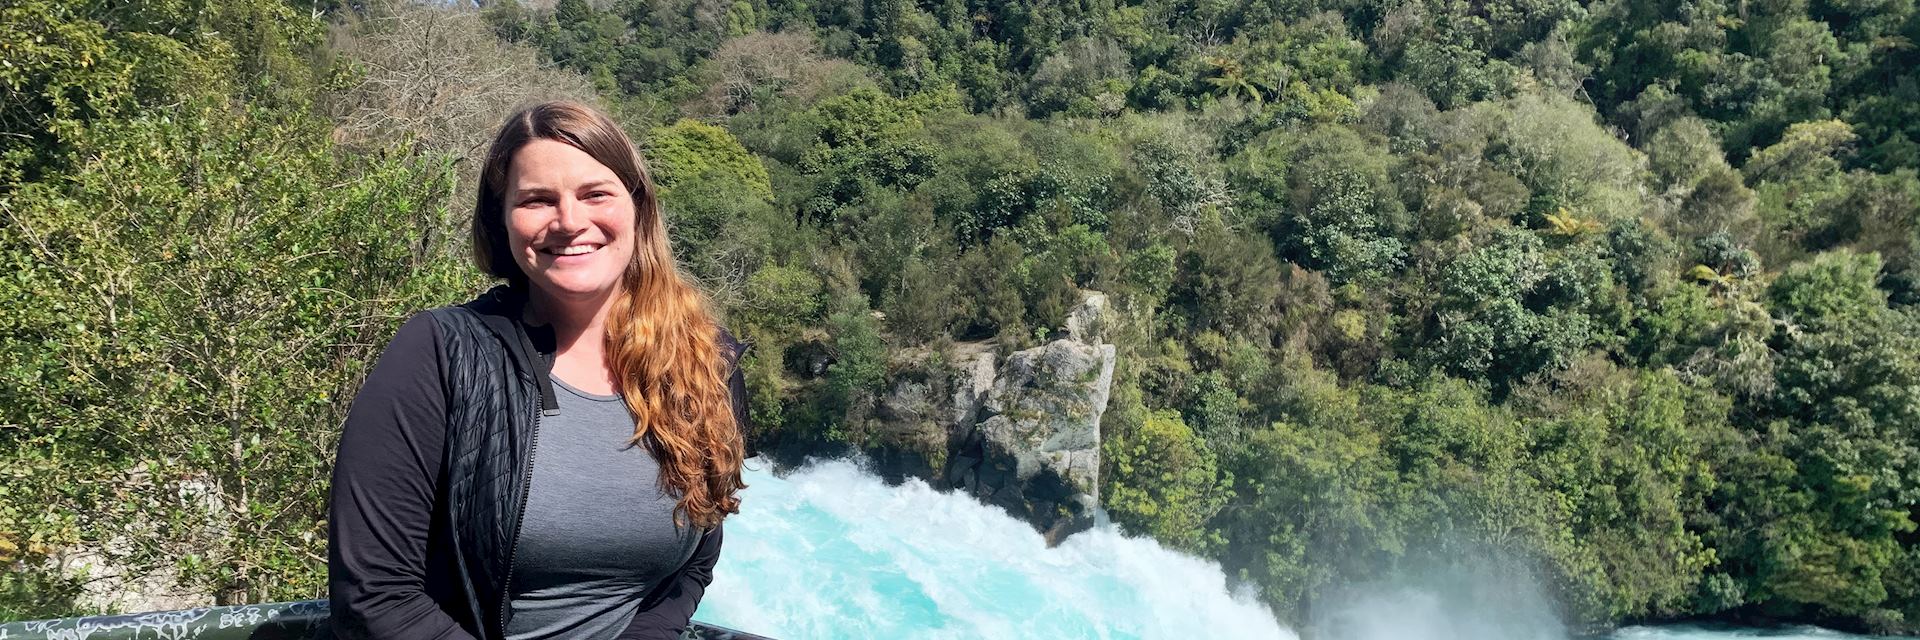 Shea at Huka Falls, New Zealand